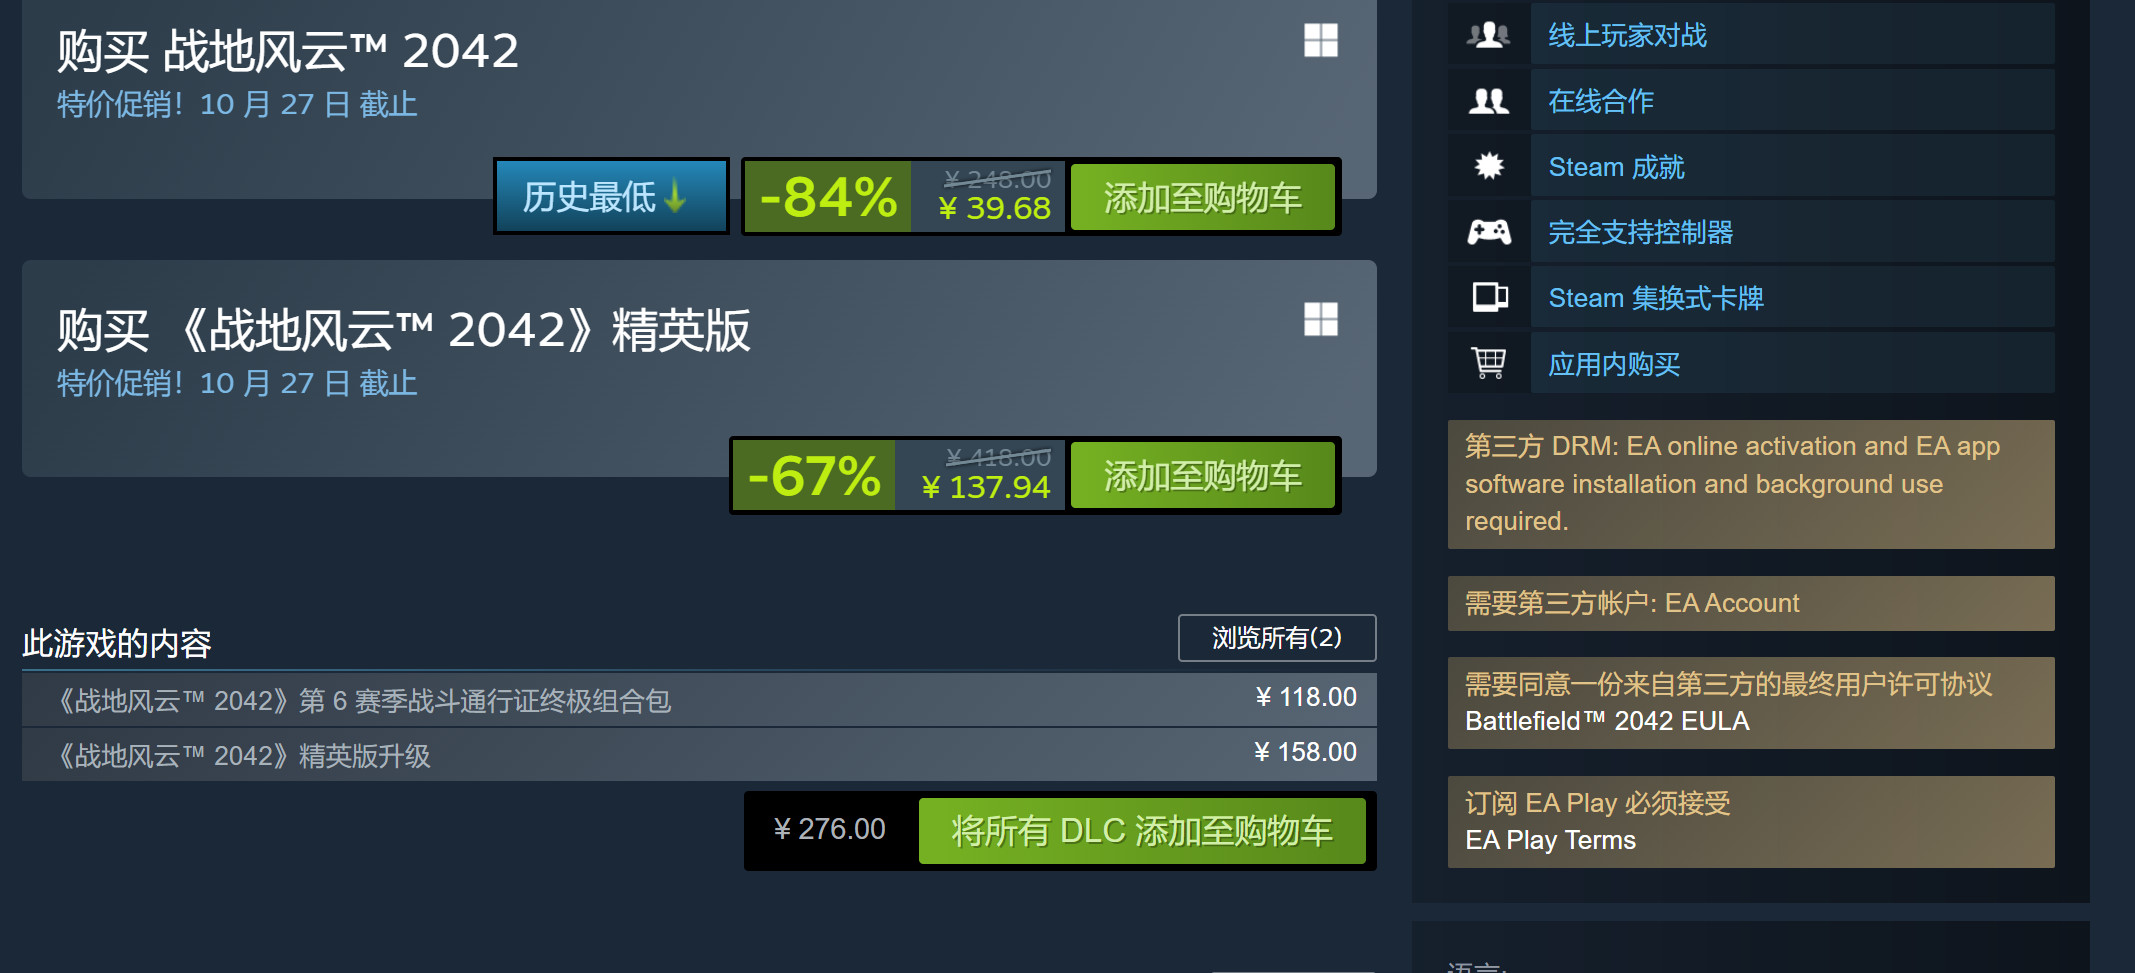 《战地2042》免费结束后 Steam在线峰值仍接近10万